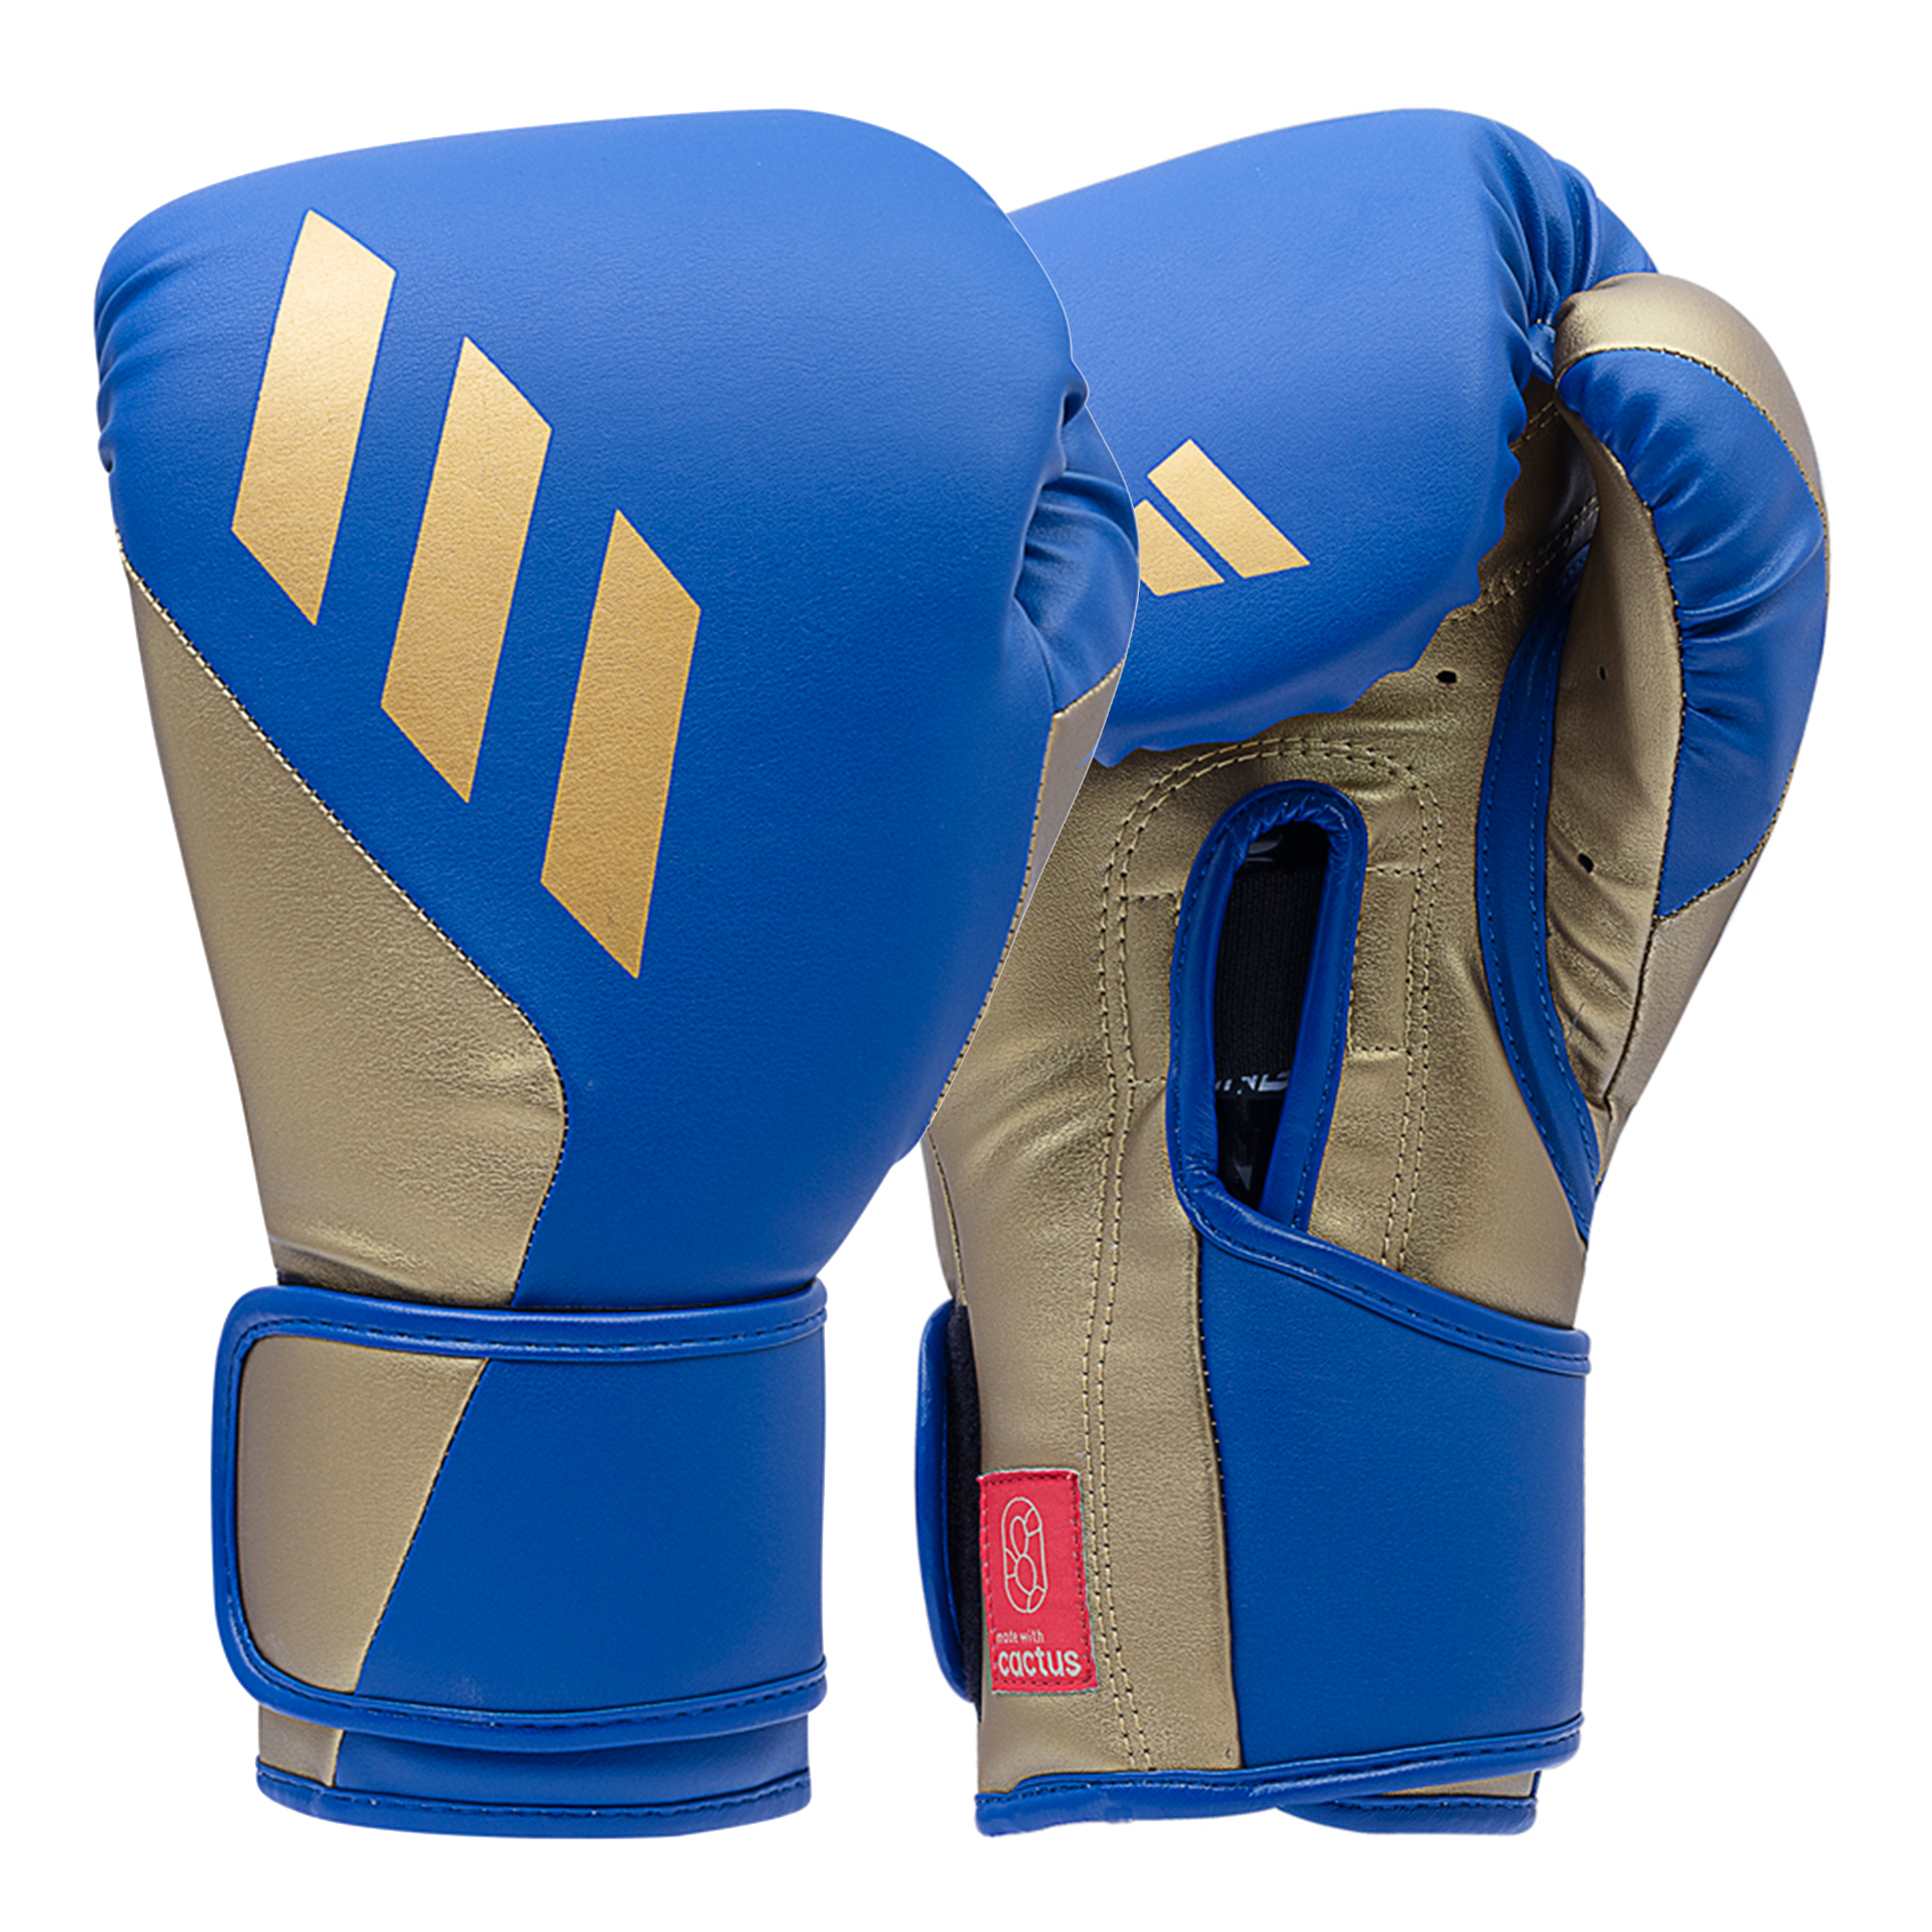 ADISPEED Tilt 350 Training Glove Velcro - Blue/Gold